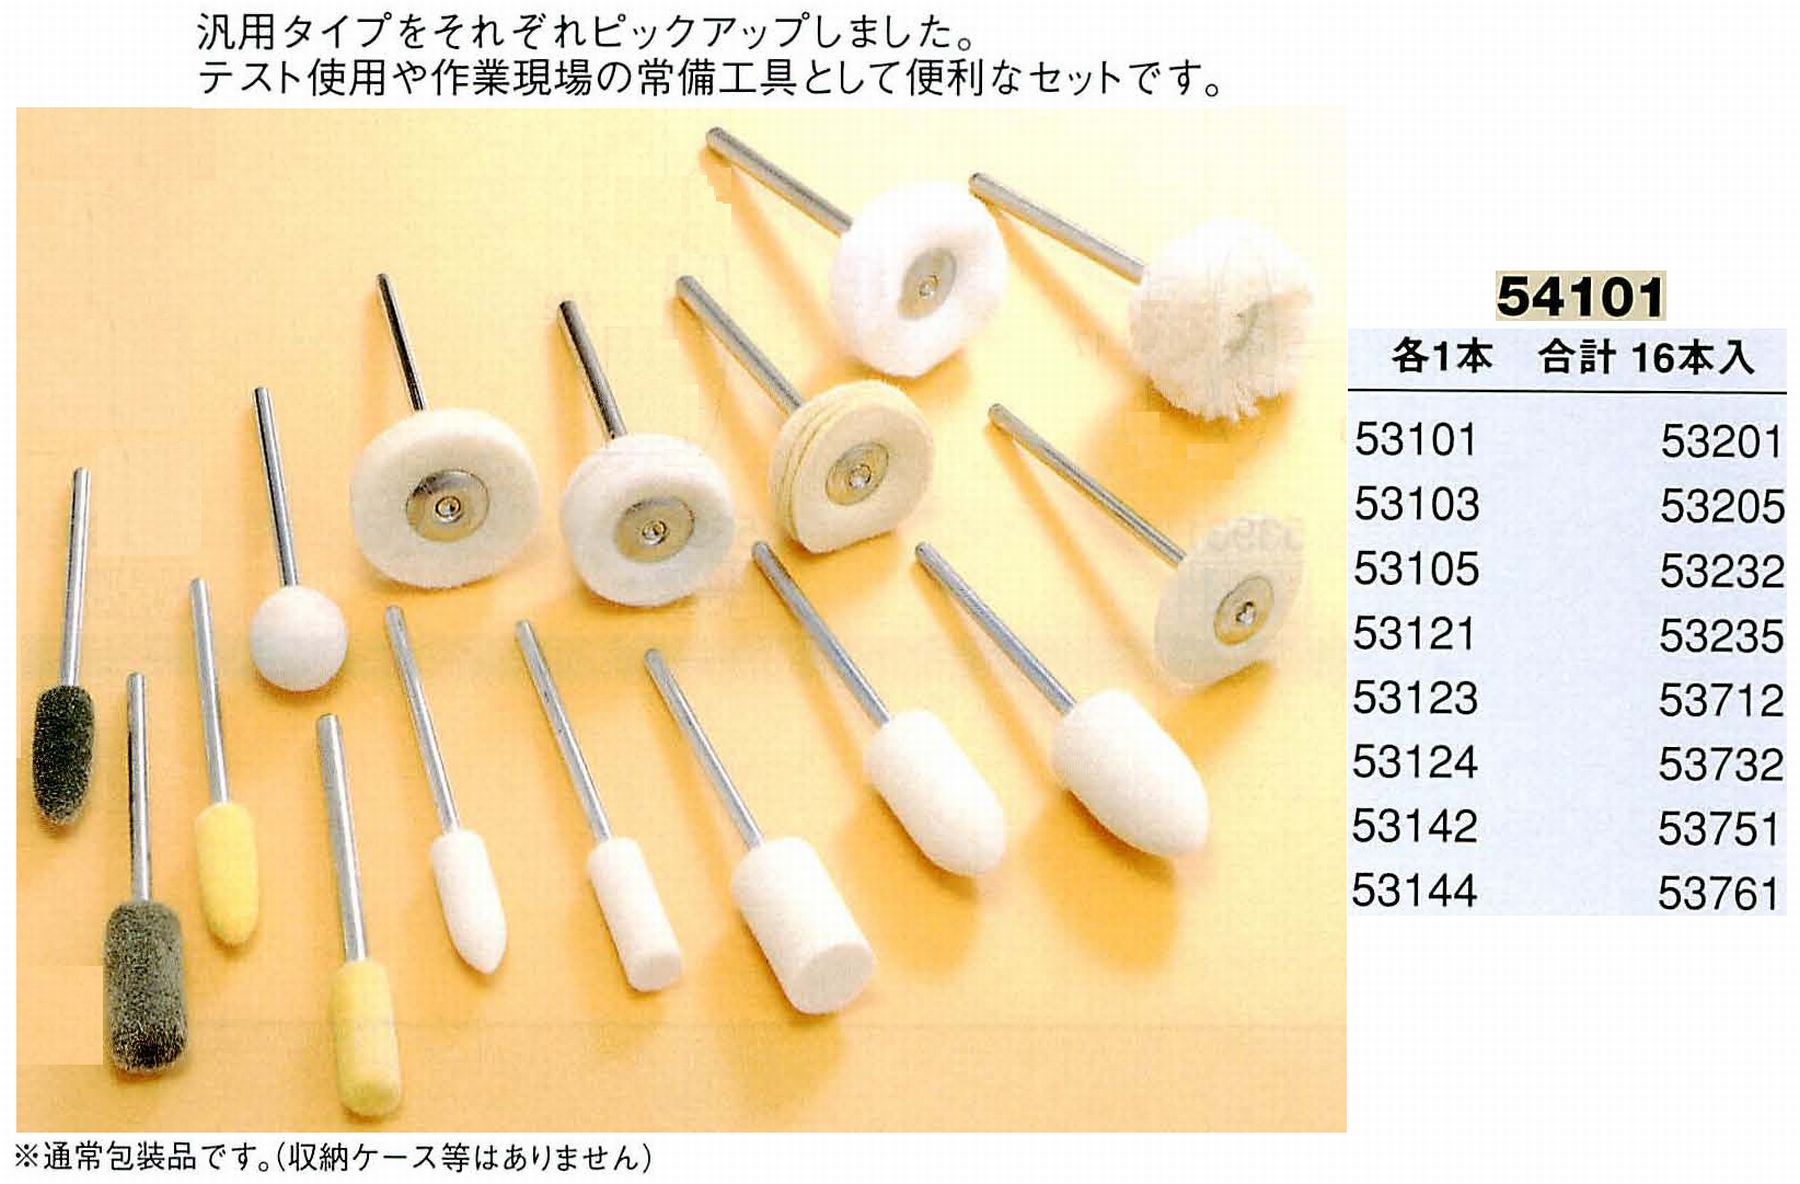 ナカニシ/NAKANISHI 研磨用バフ アソートセット 軸径(シャンク)φ2.34mm 54101